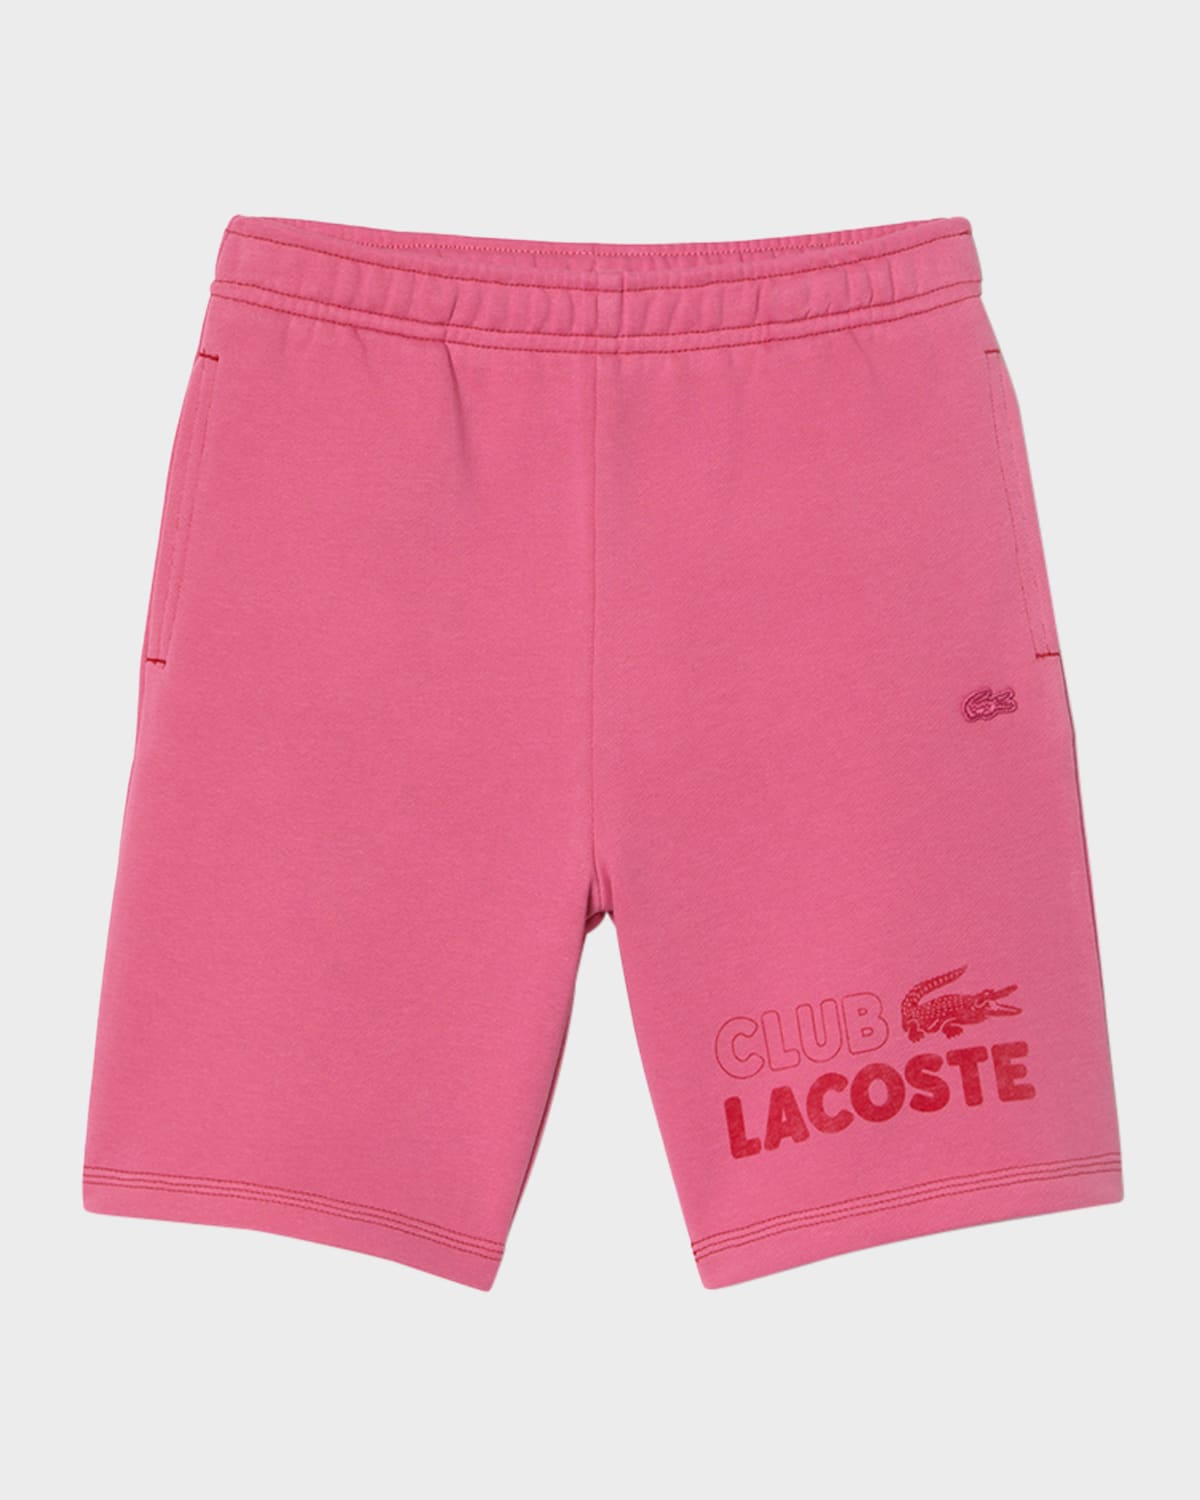 Lacoste Kids' Boy's  Club Fleece Shorts In Medium Pink